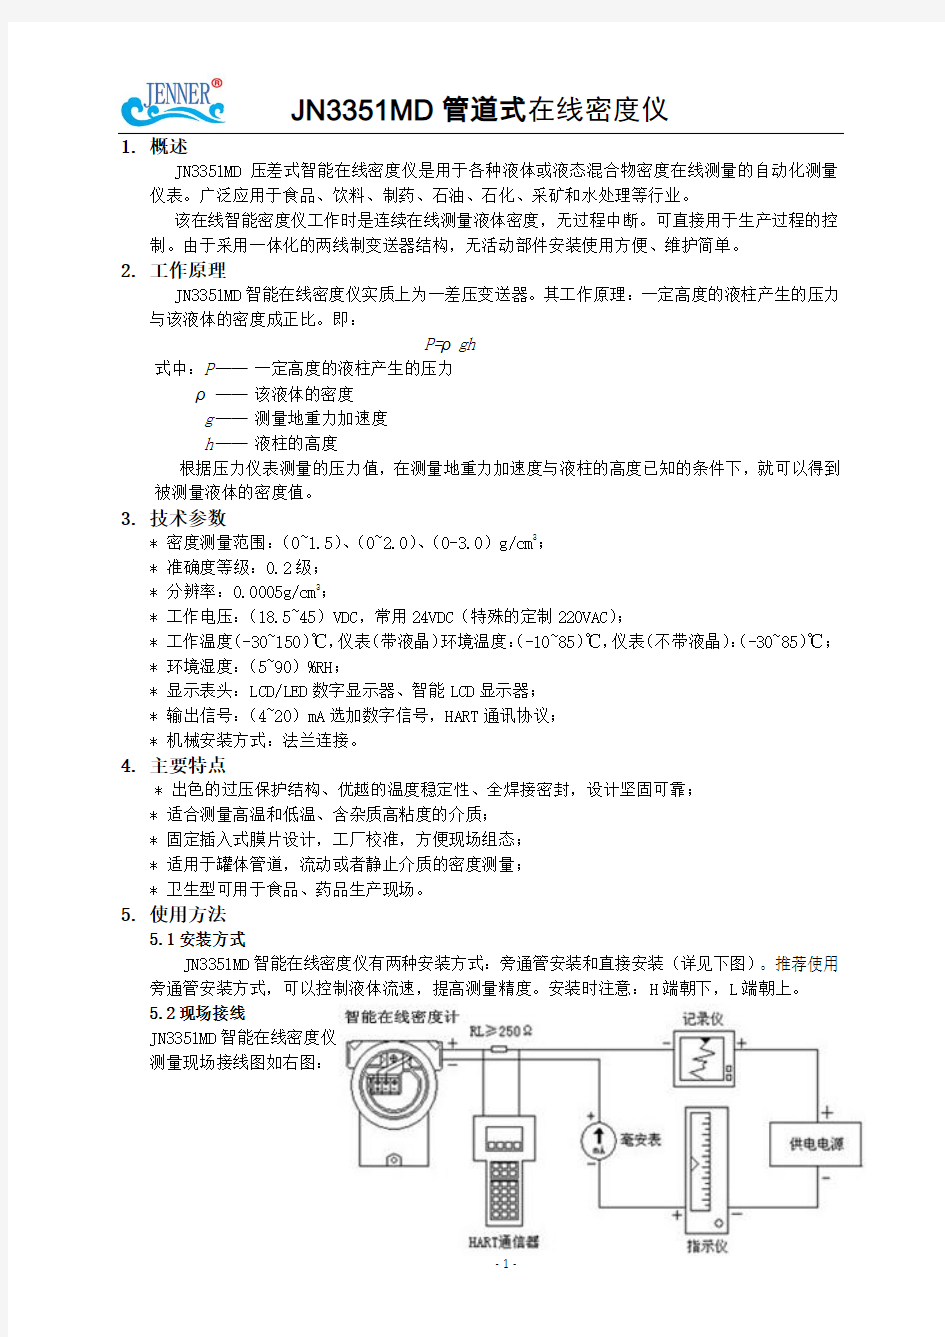 管道式在线密度计原理及安装使用说明书(中文版)